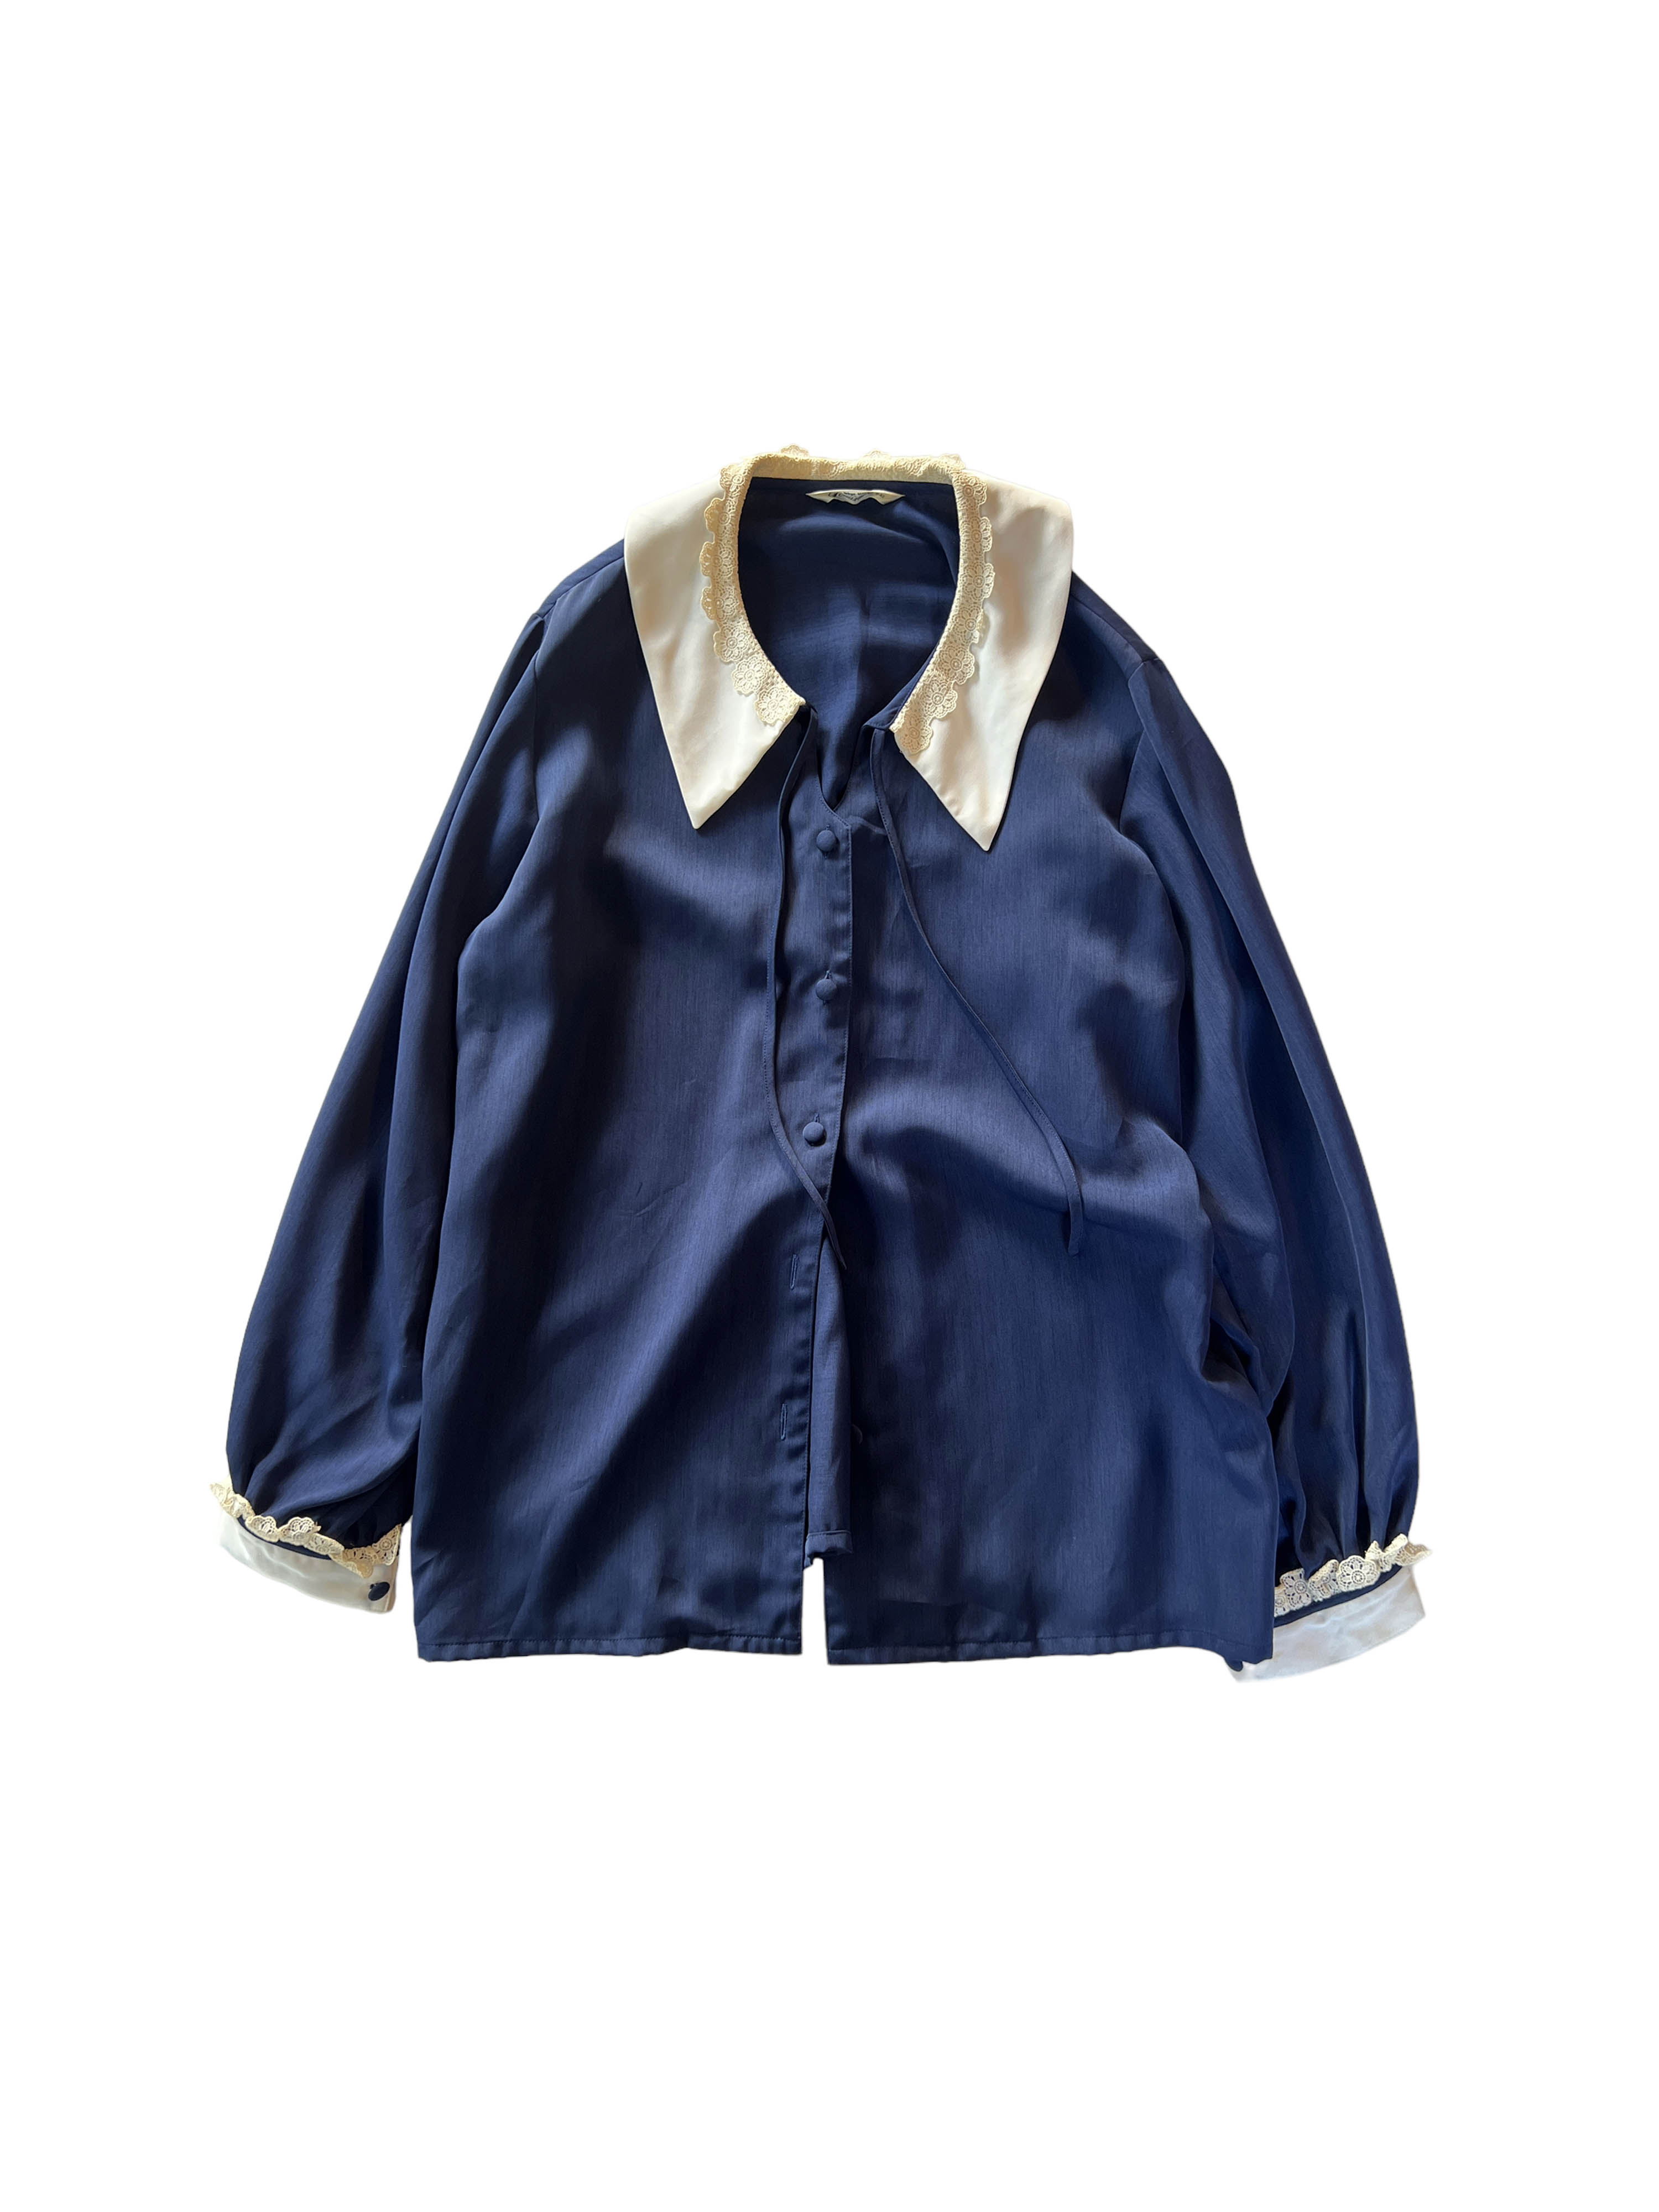 vintagr frill detail blouse